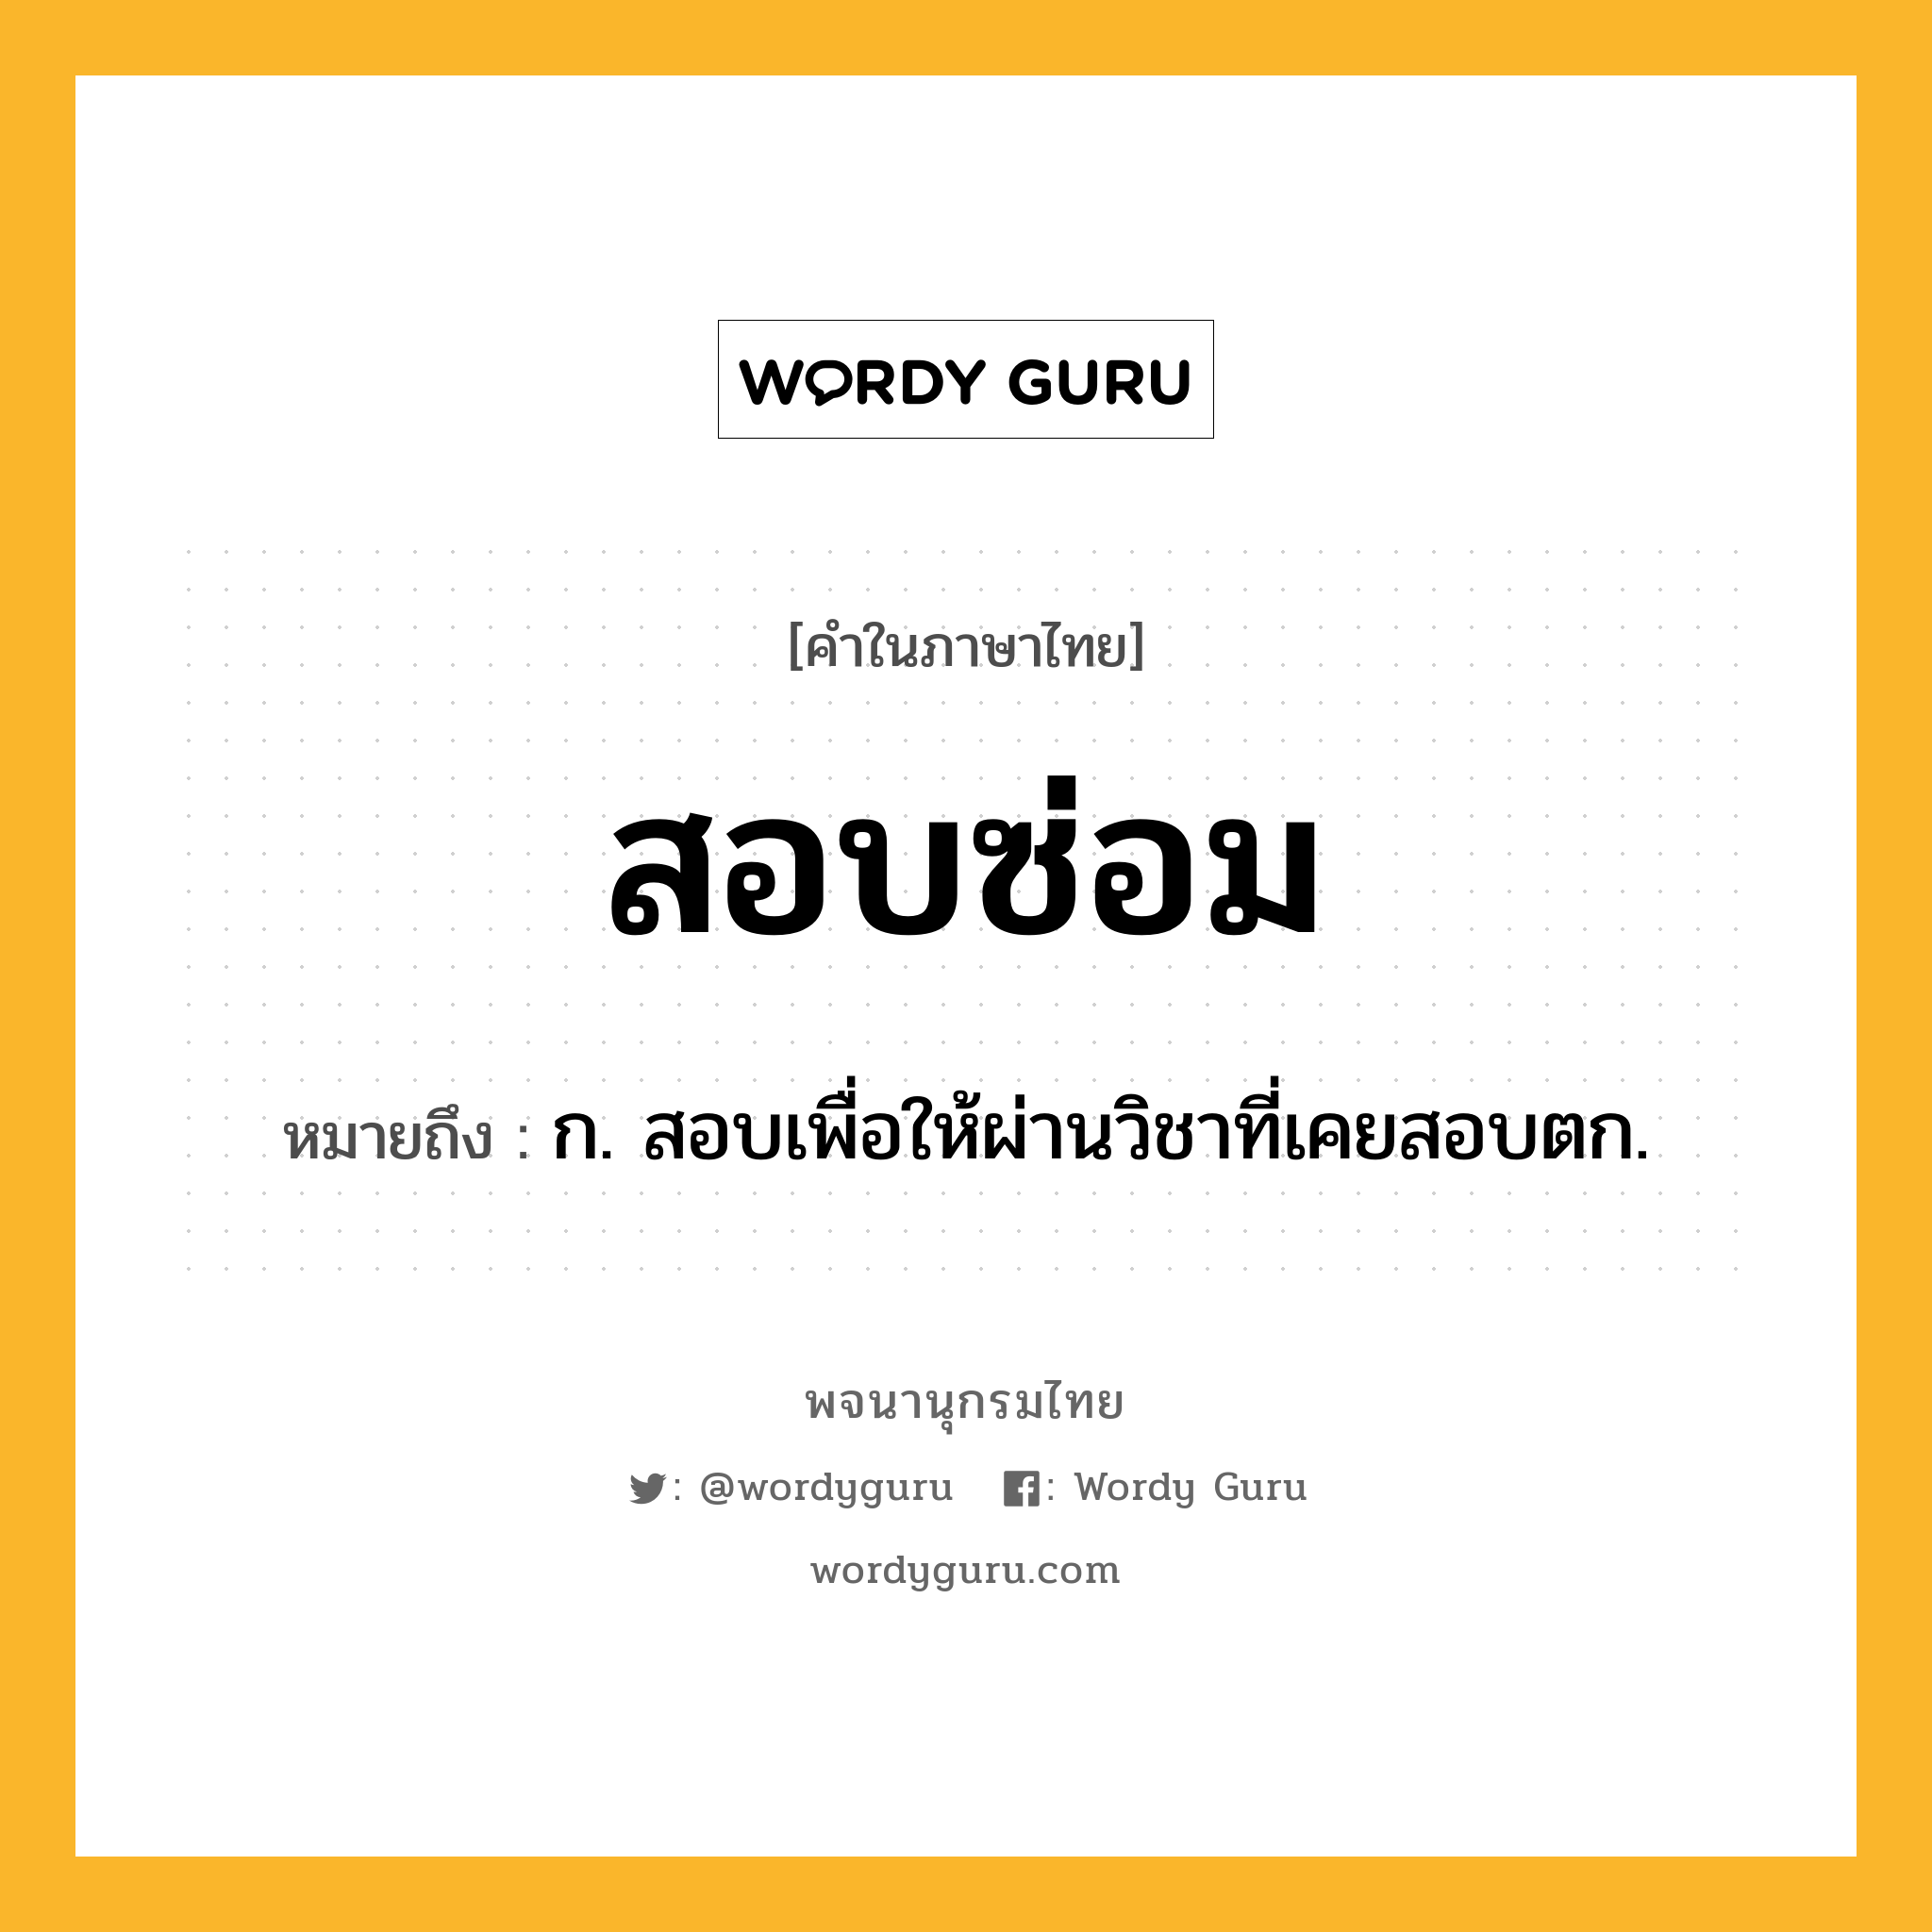 สอบซ่อม ความหมาย หมายถึงอะไร?, คำในภาษาไทย สอบซ่อม หมายถึง ก. สอบเพื่อให้ผ่านวิชาที่เคยสอบตก.